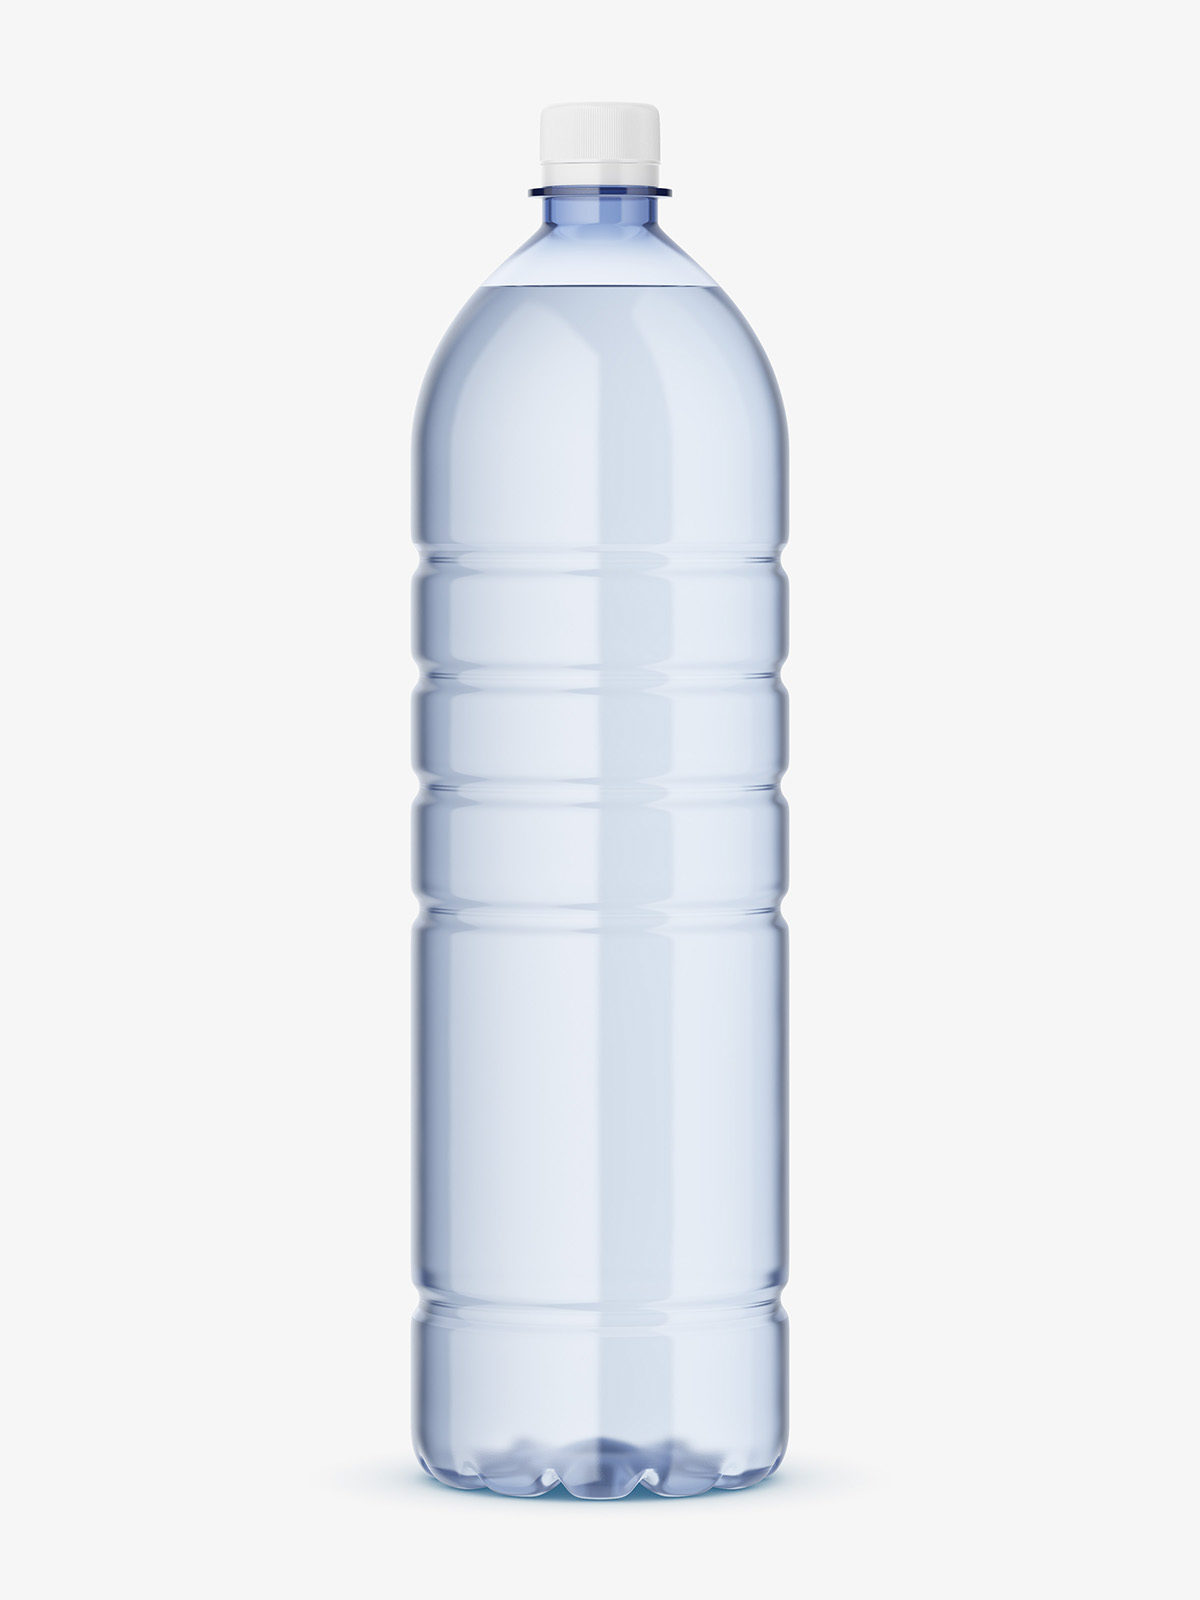 Download Mineral water bottle mockup - Smarty Mockups